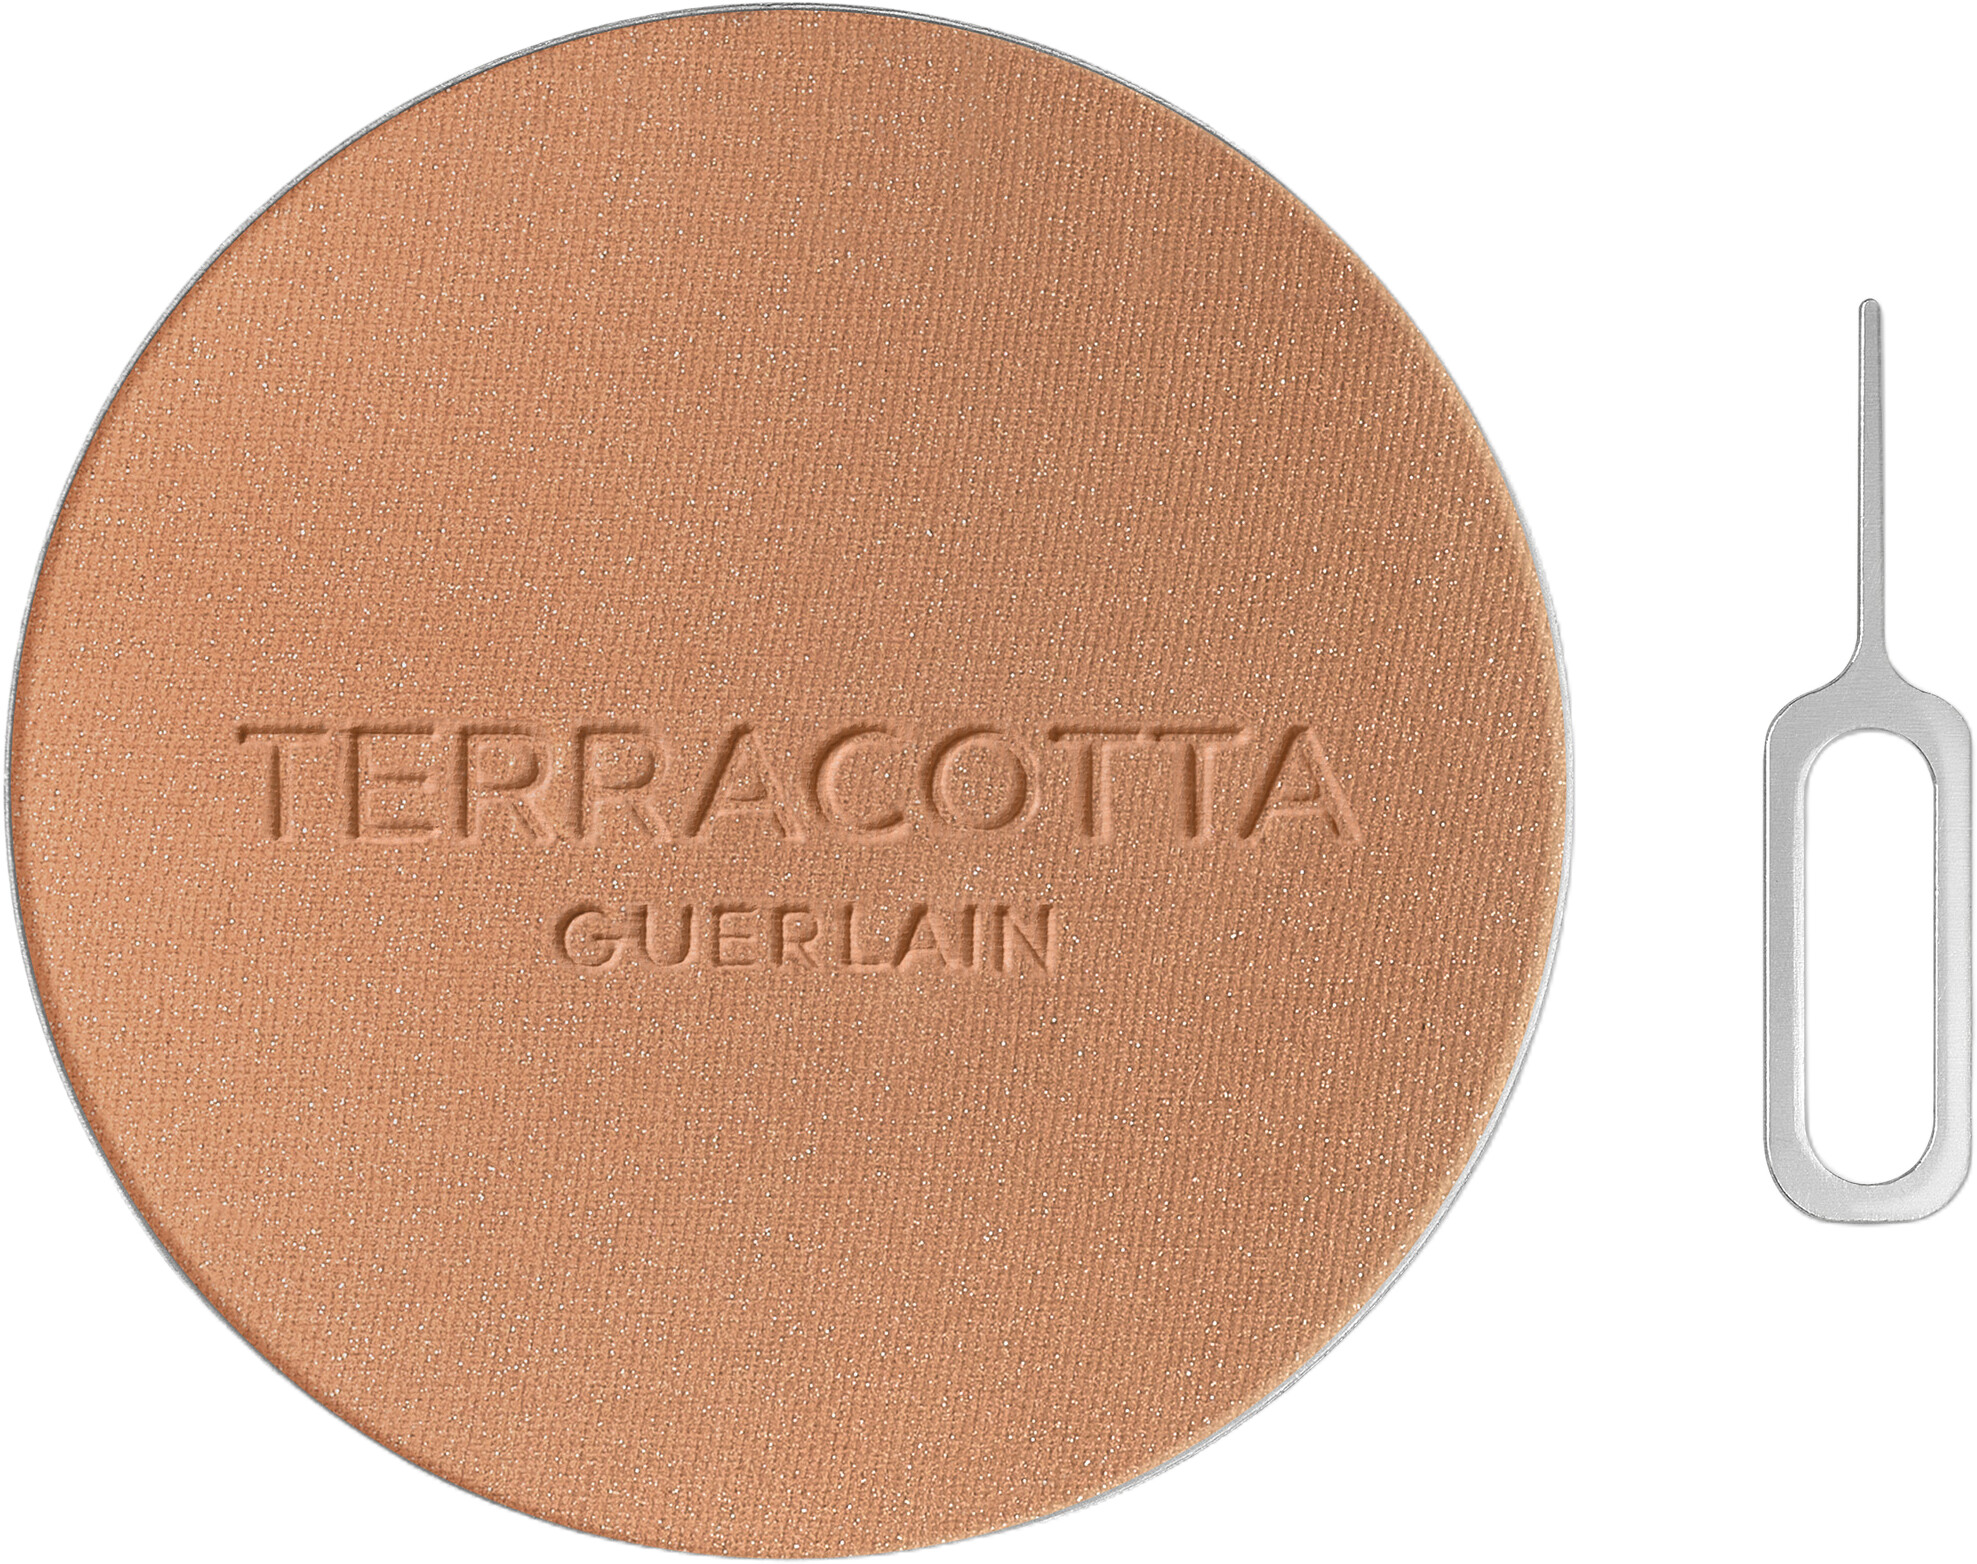 GUERLAIN Terracotta Bronzer Refill 8.5g 03 - Medium Warm